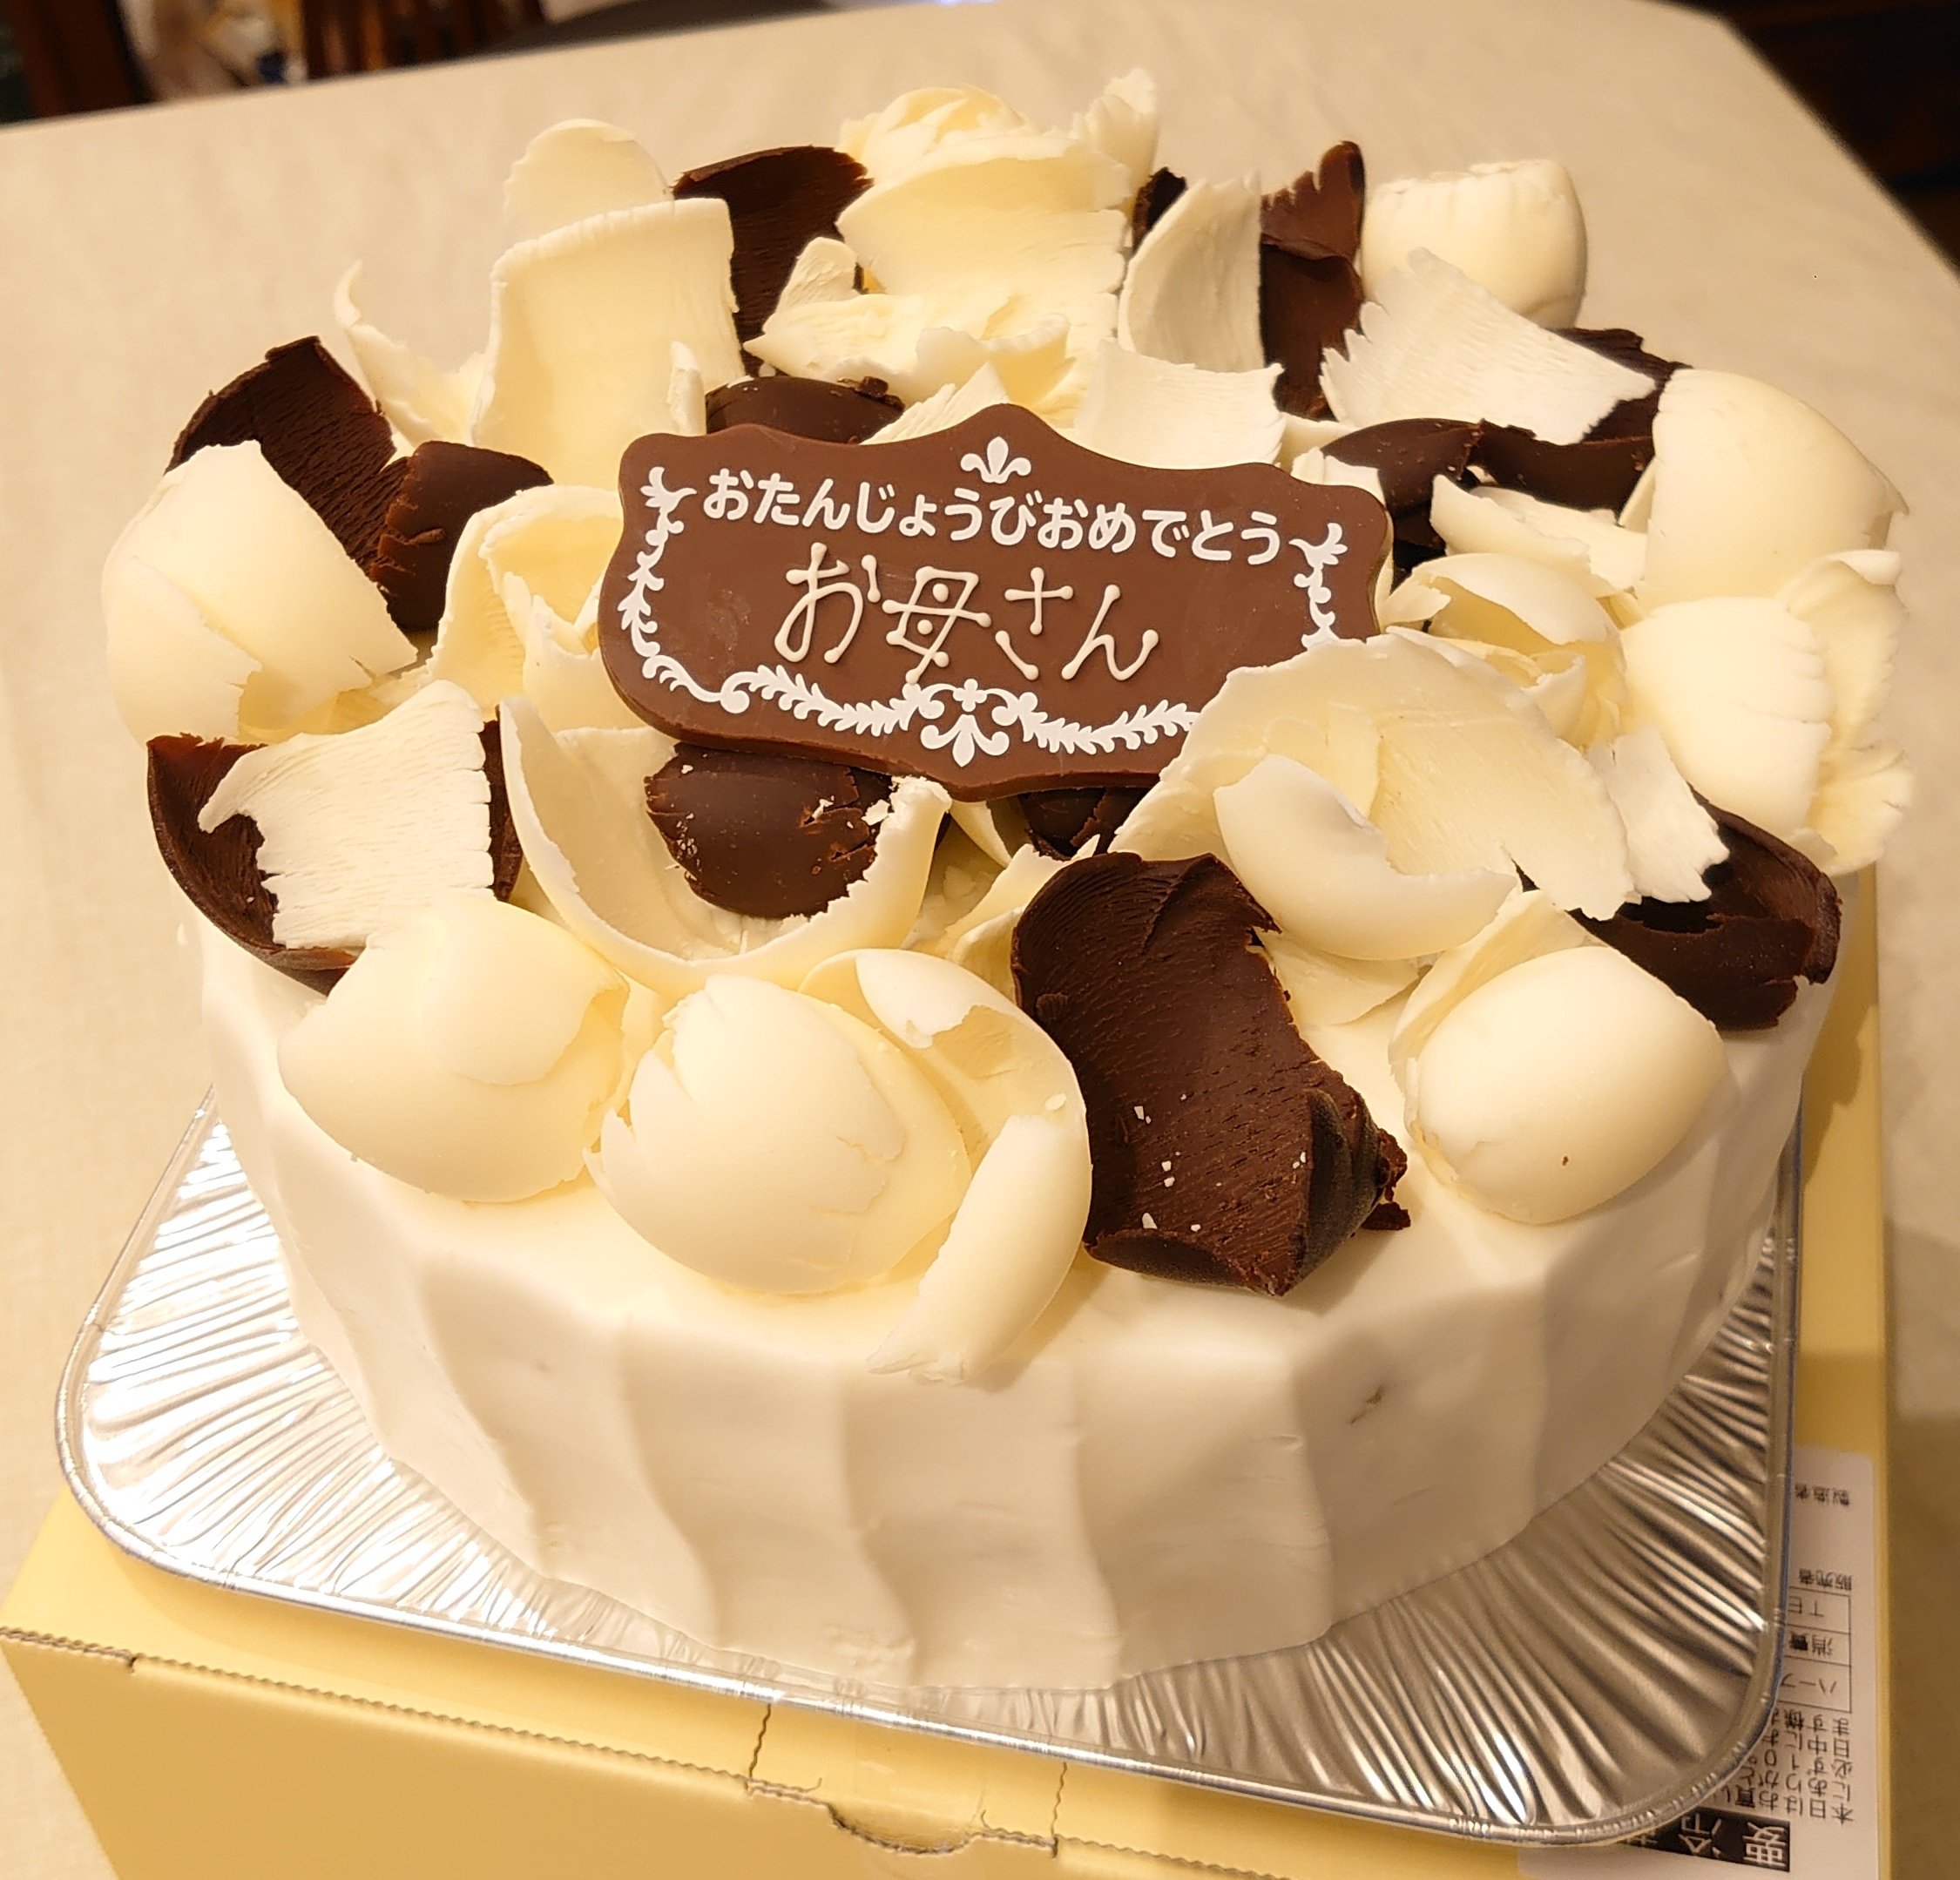 Peter Chen 今日は母の誕生日で 初めて Harbs のブラック Amp ホワイトチョコレートケーキ を買ってみた 店内で食べるケーキと違って 装飾が凄かった T Co Wkelsgvjzf Twitter